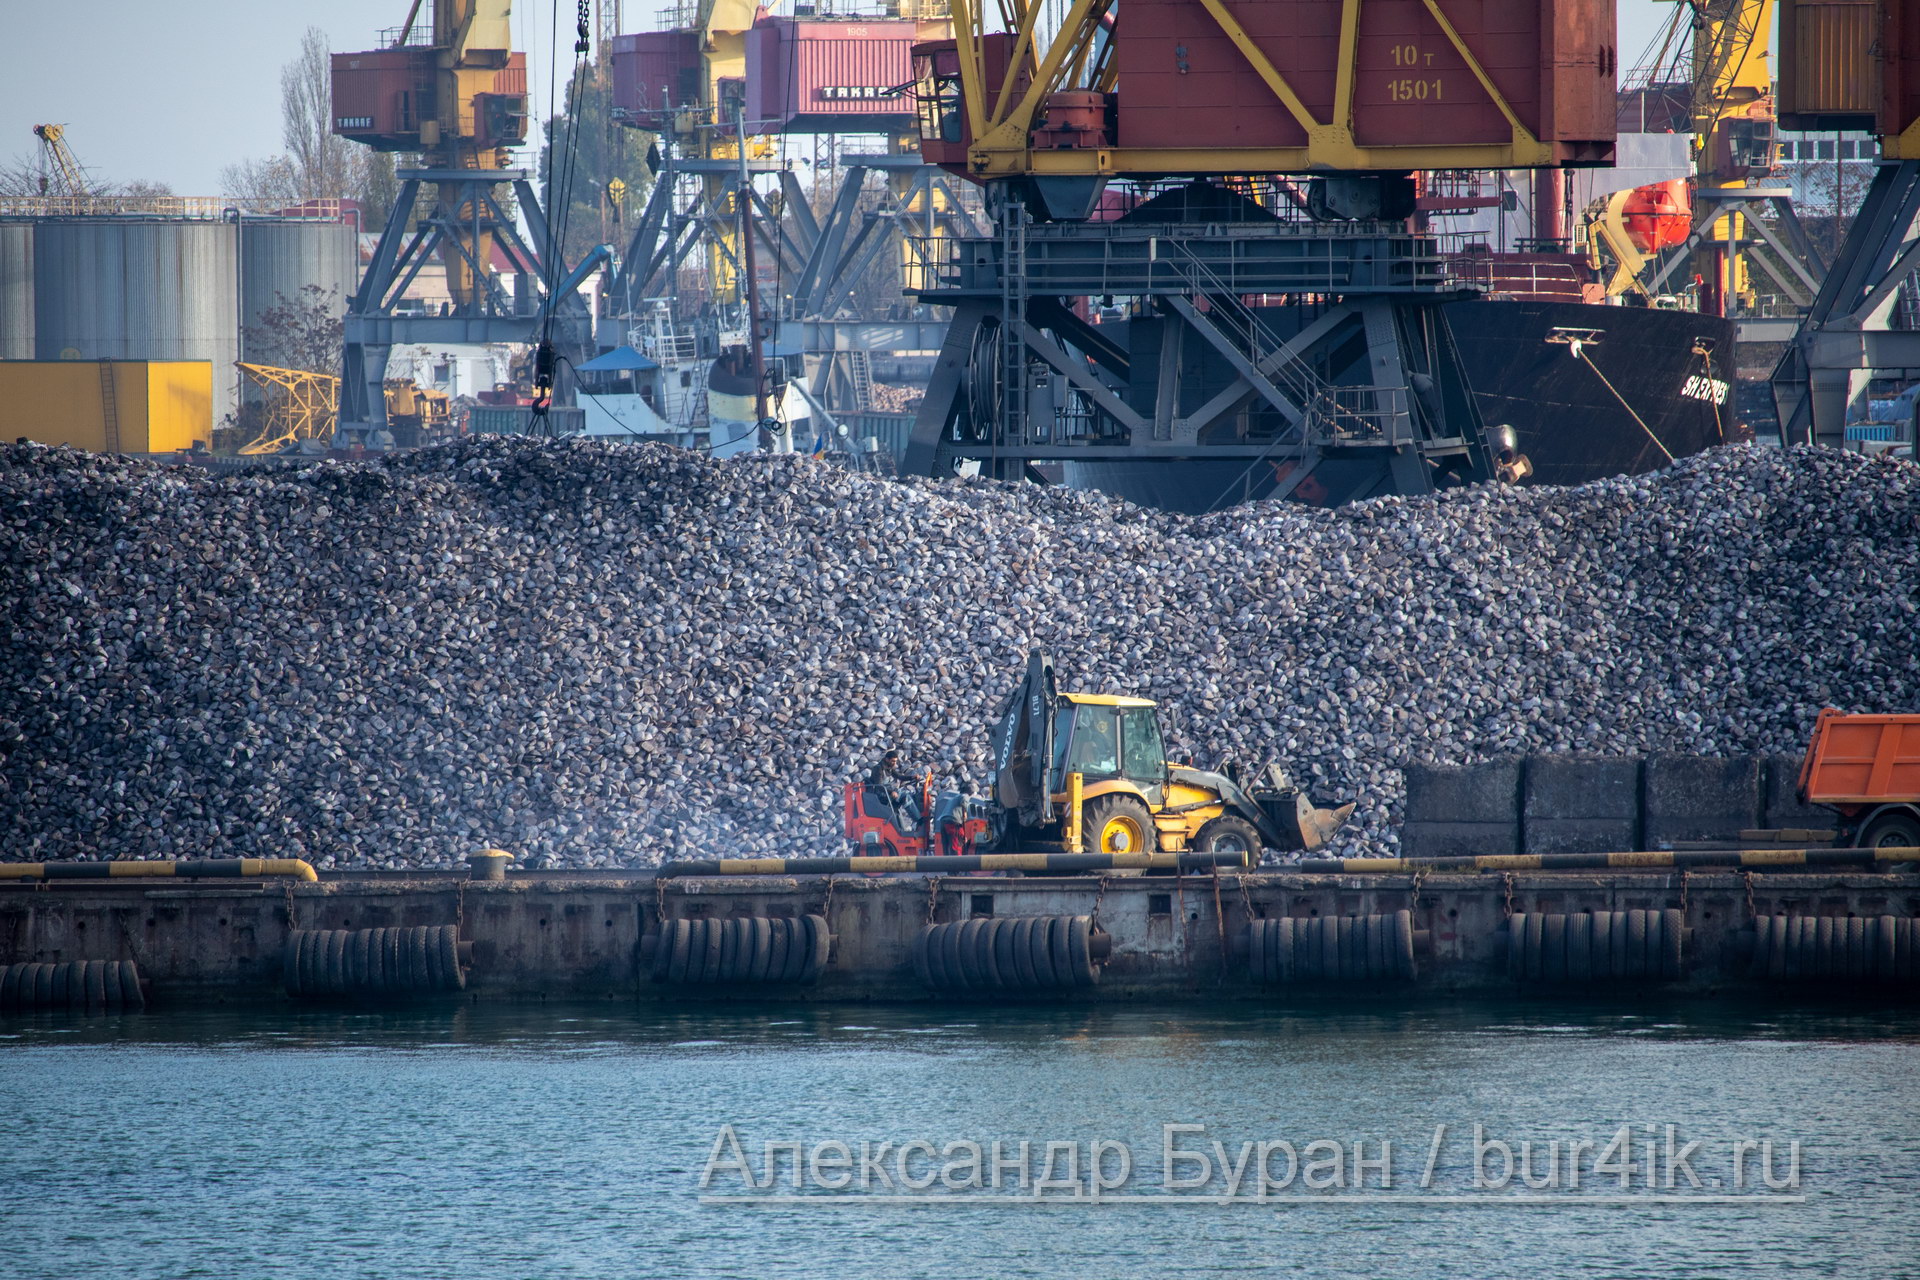 Погрузчик и экскаватор, которые помогают грузить корабли с камня в порт - Украина, Одесса, 09,11,2019